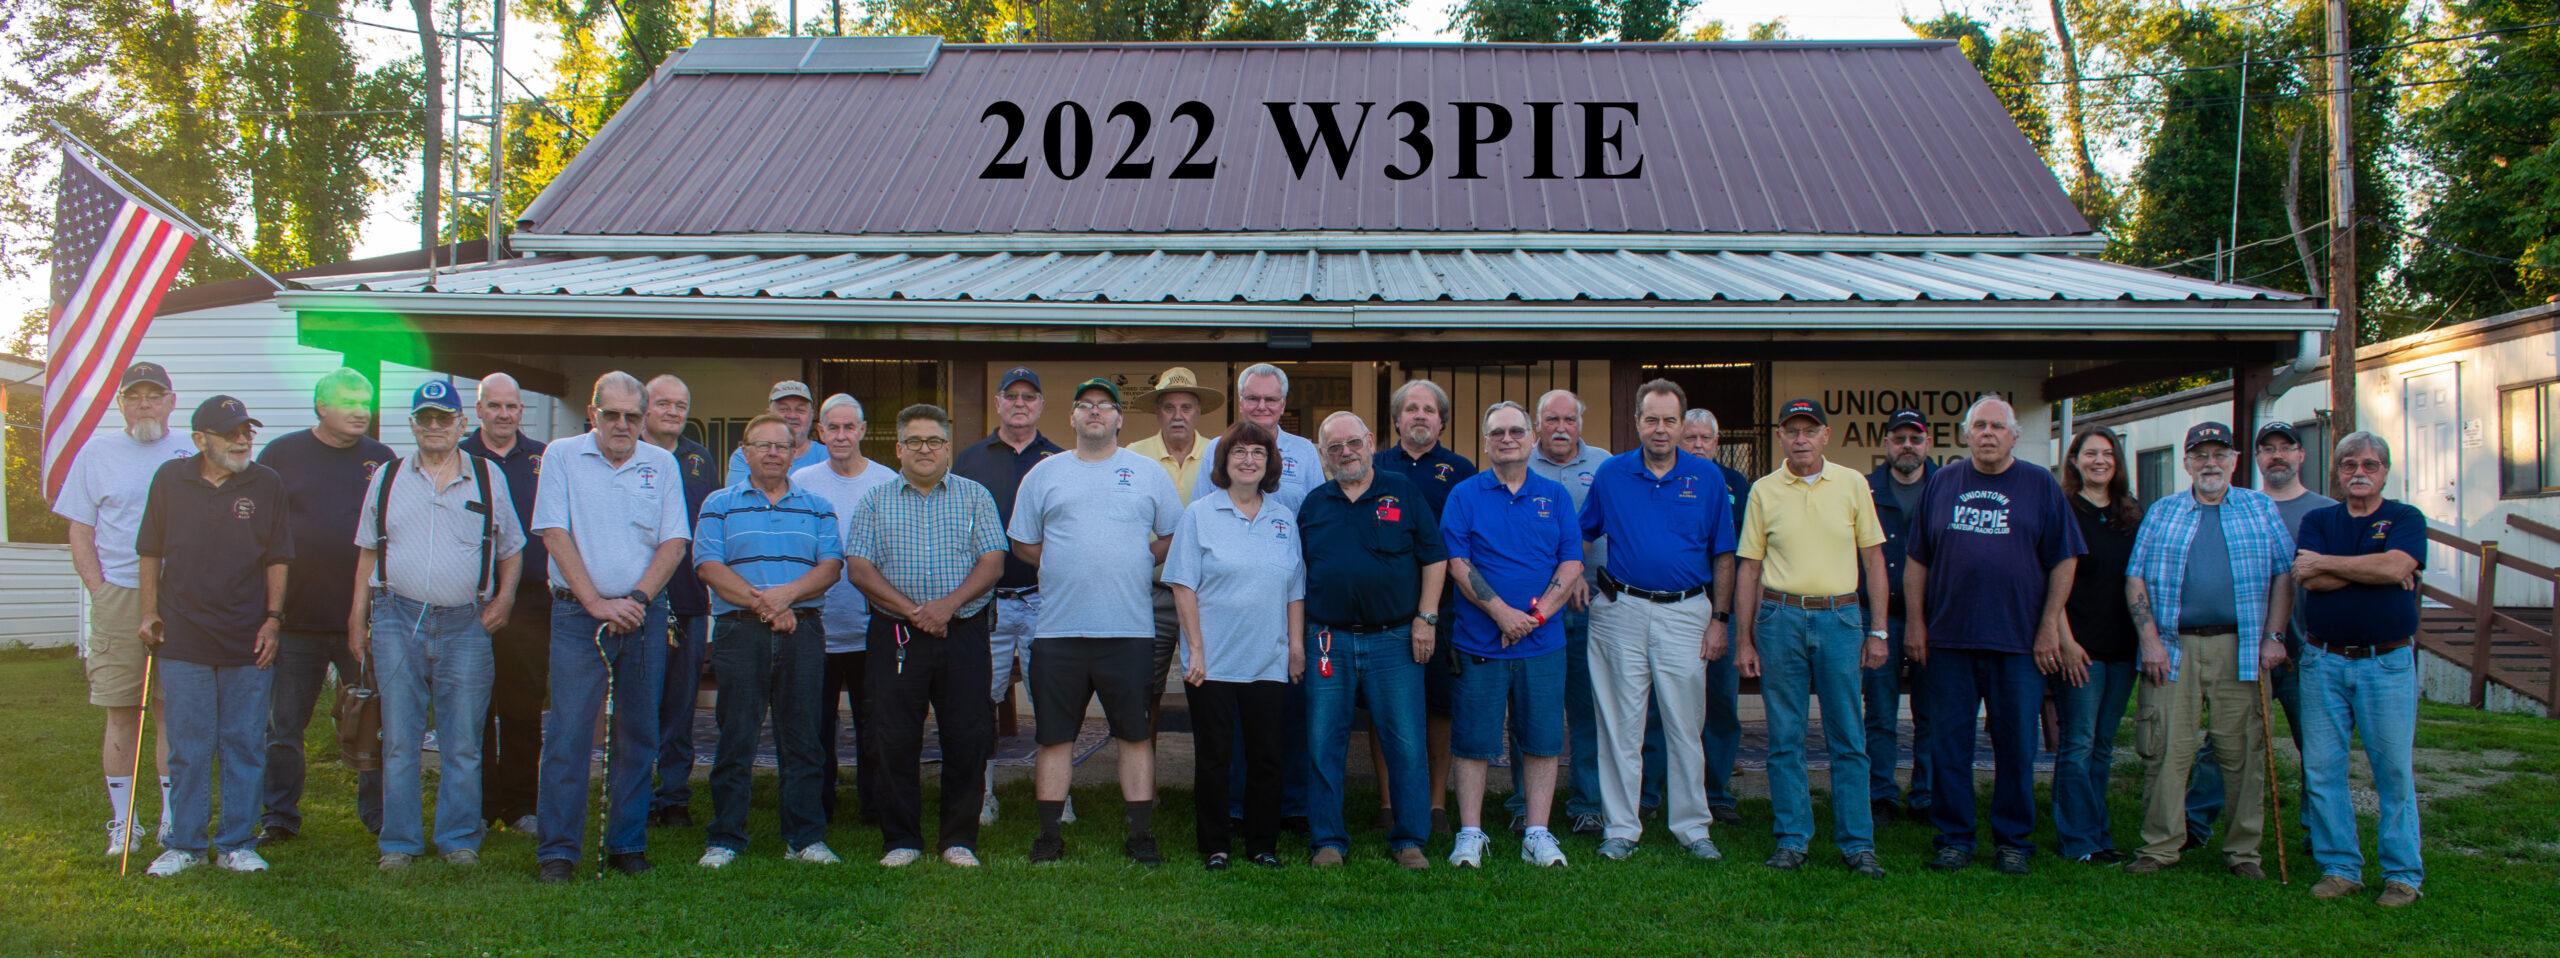 2022 W3PIE Members